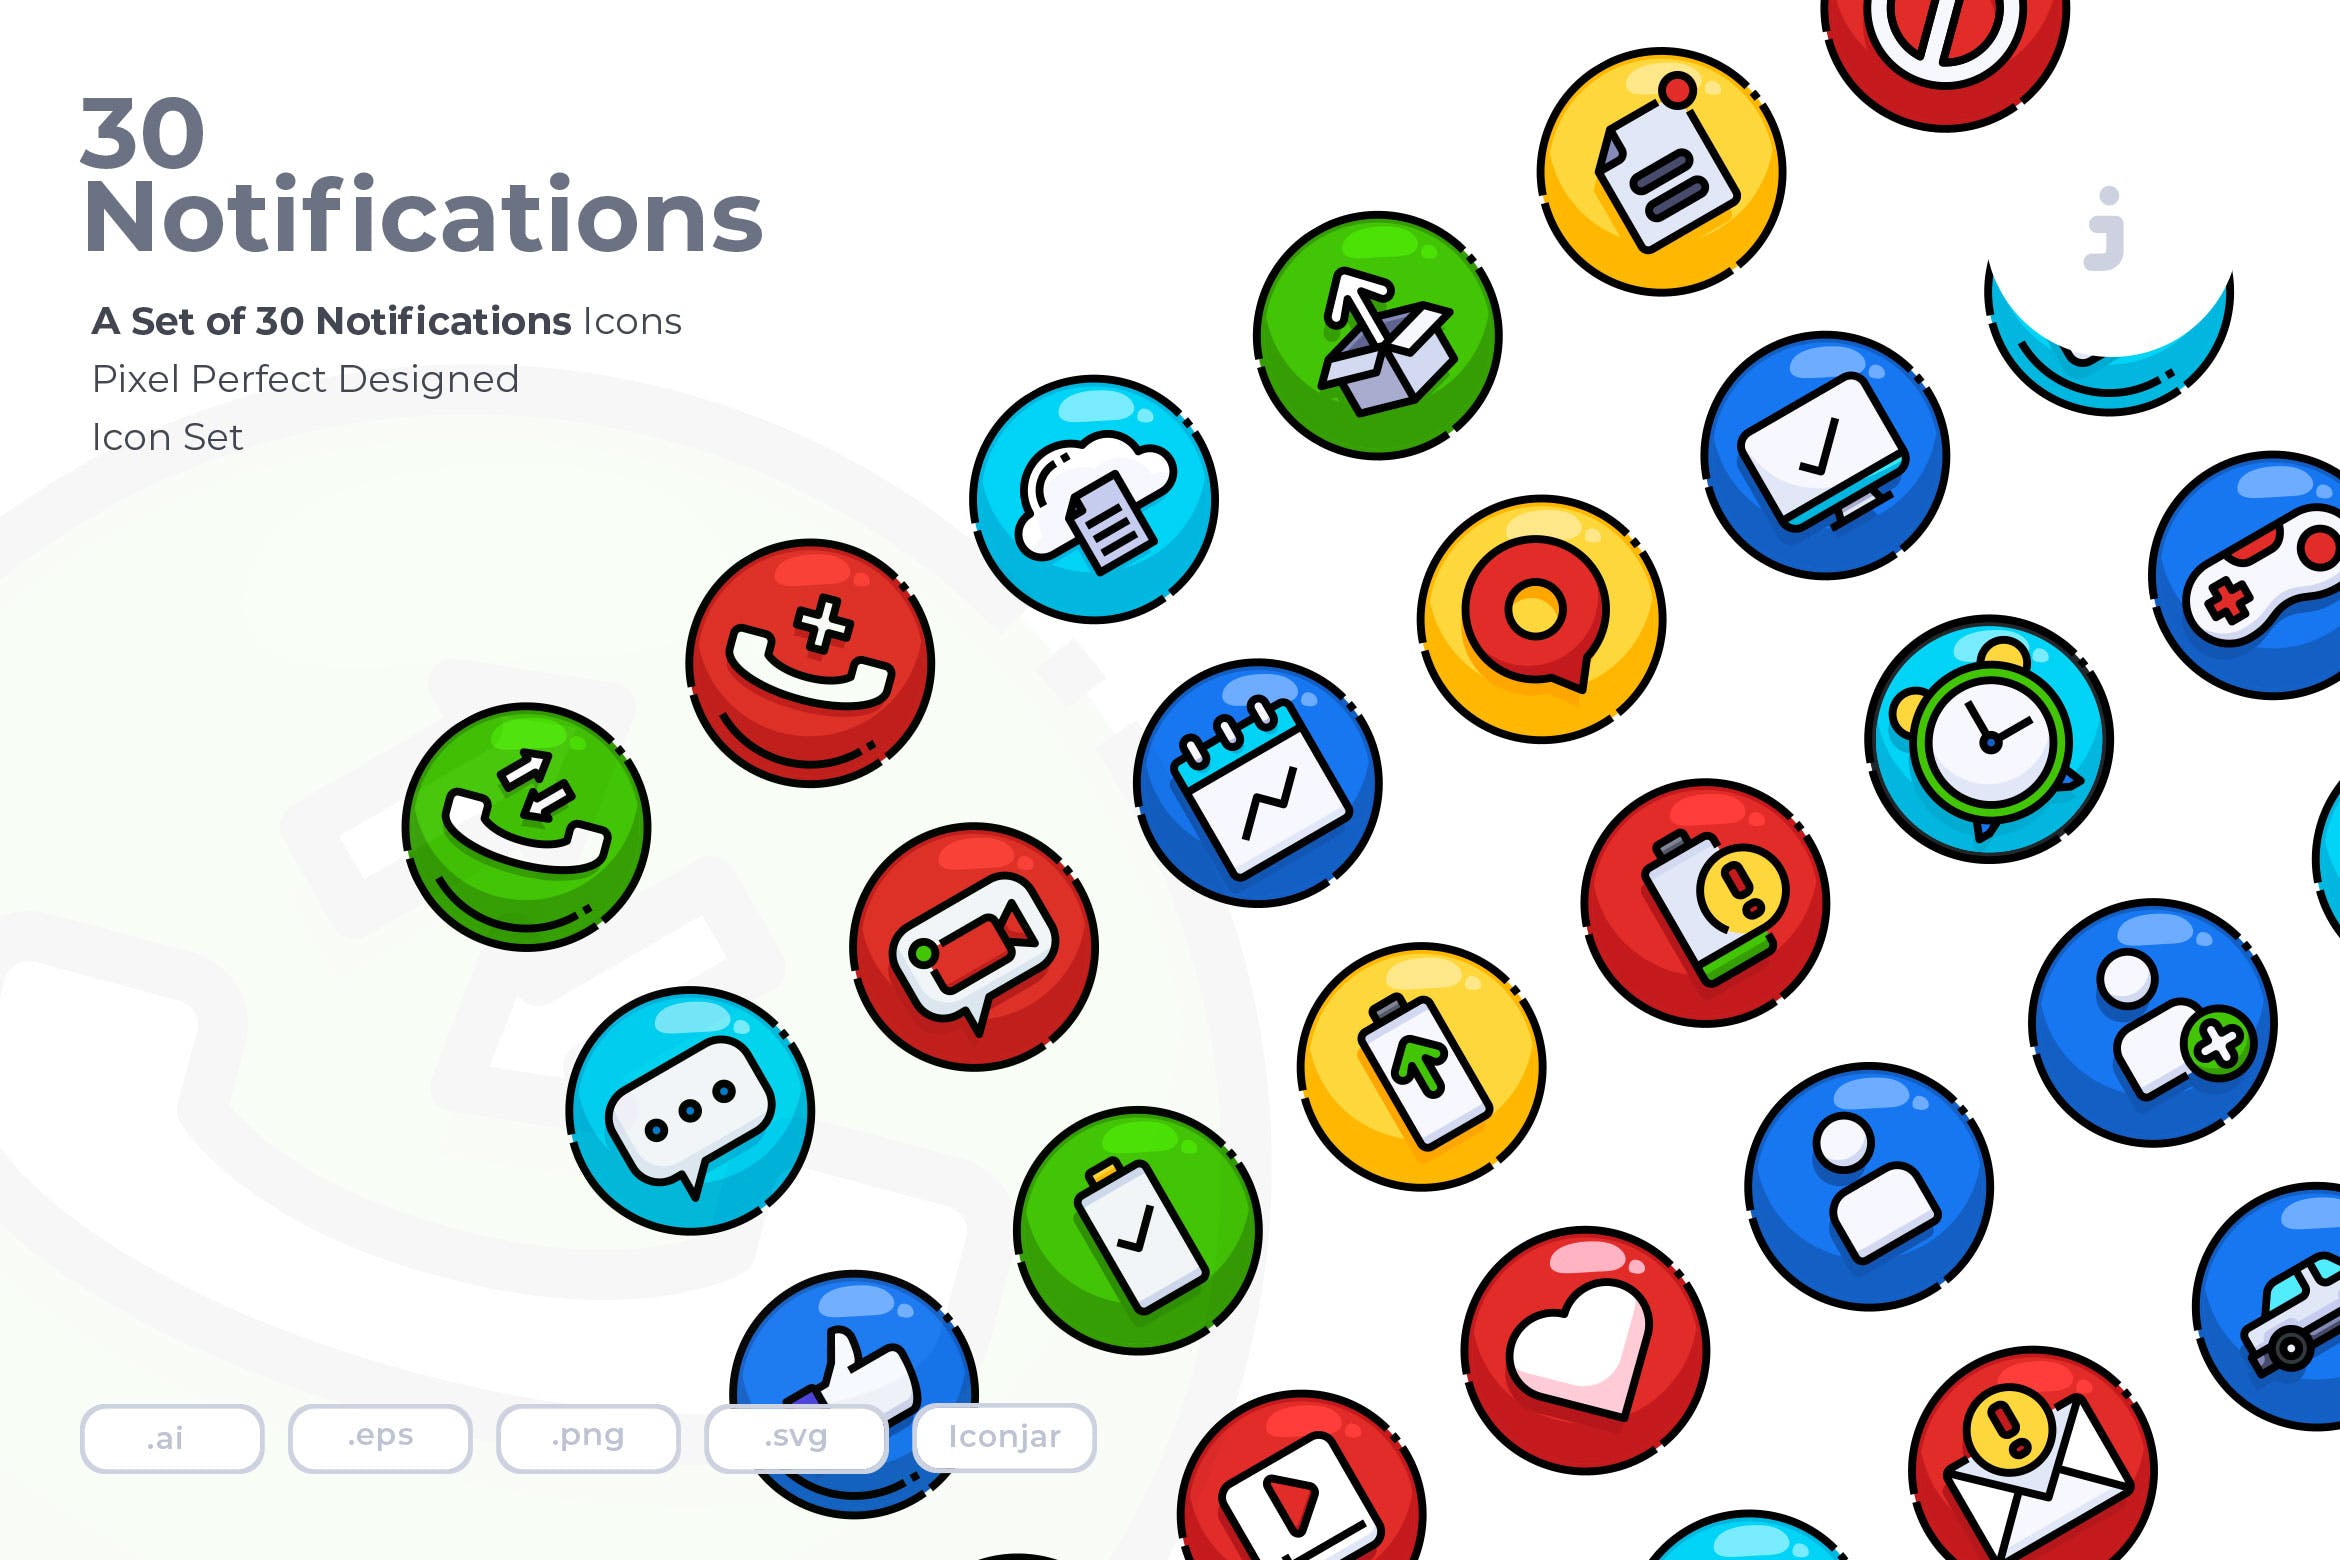 30枚系统信息通知矢量图标素材 30 Notifications Icons插图